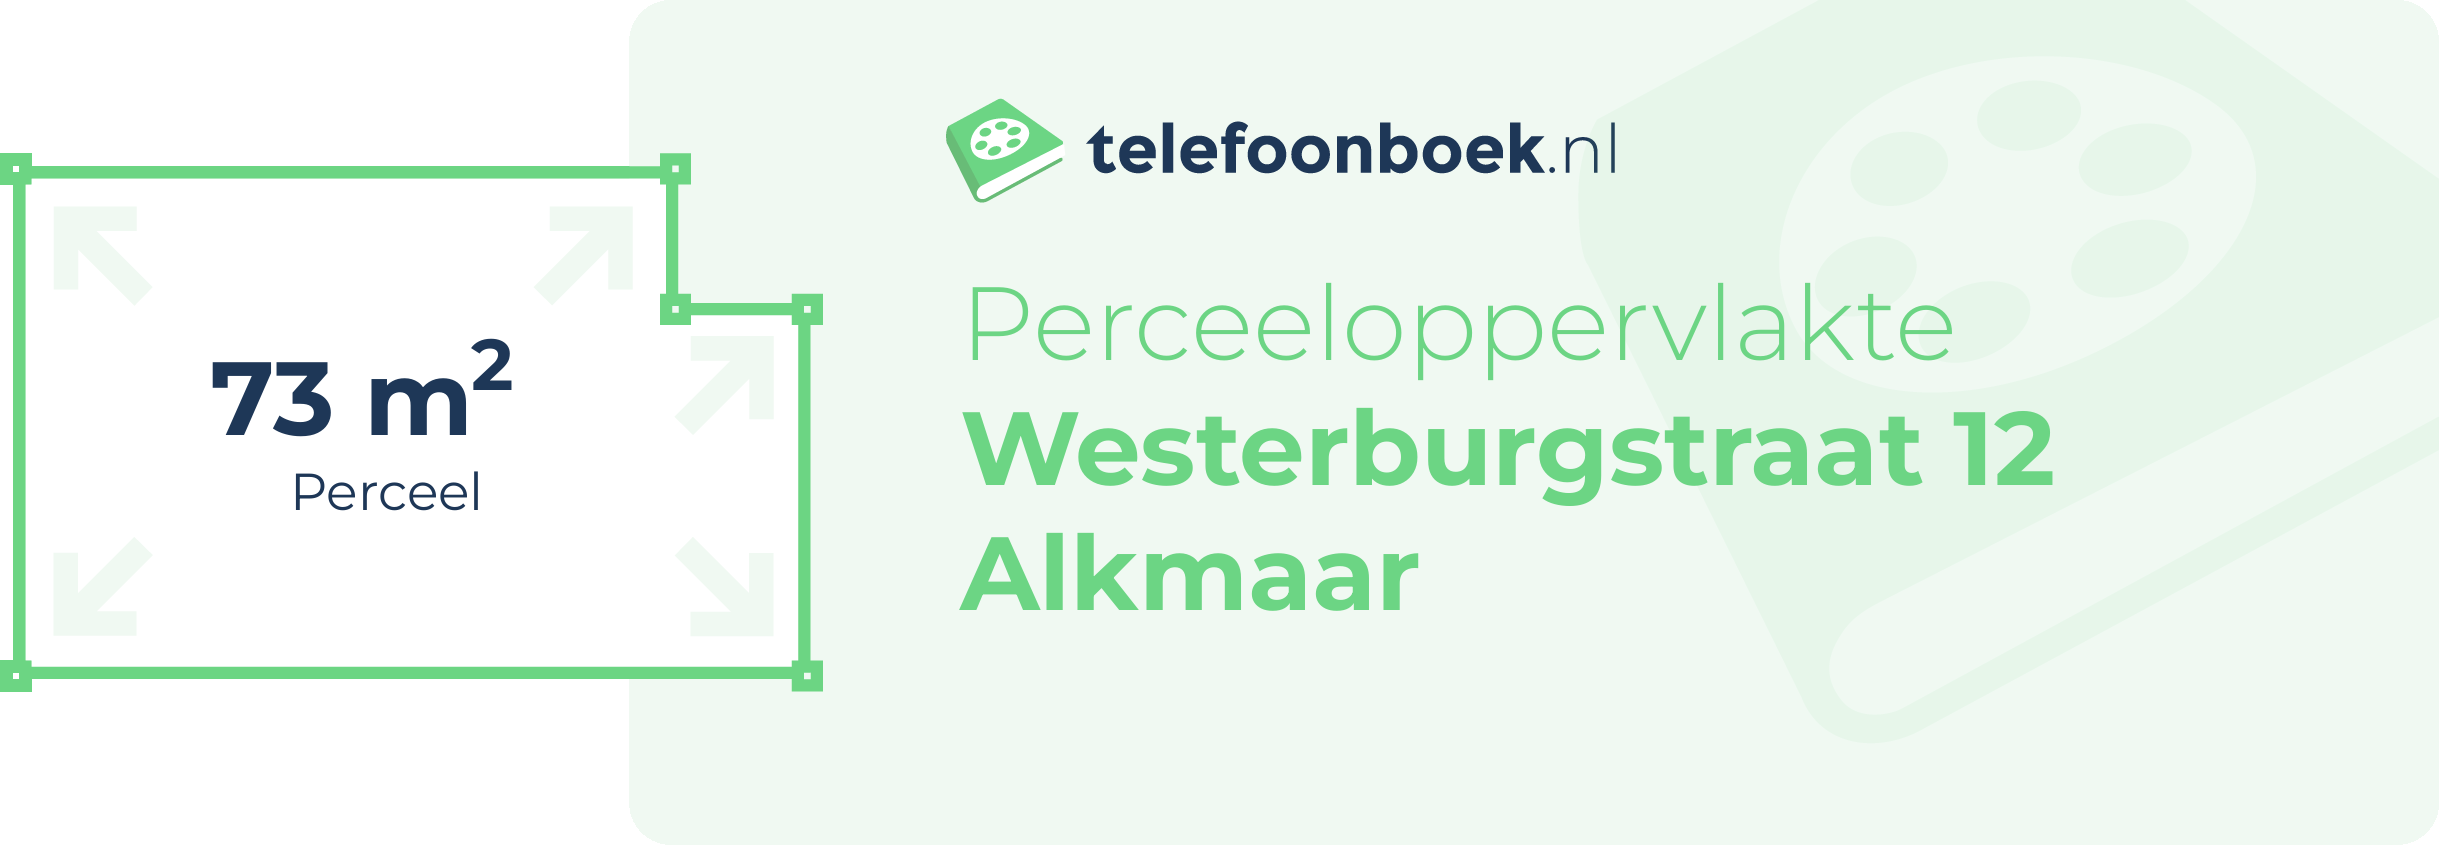 Perceeloppervlakte Westerburgstraat 12 Alkmaar